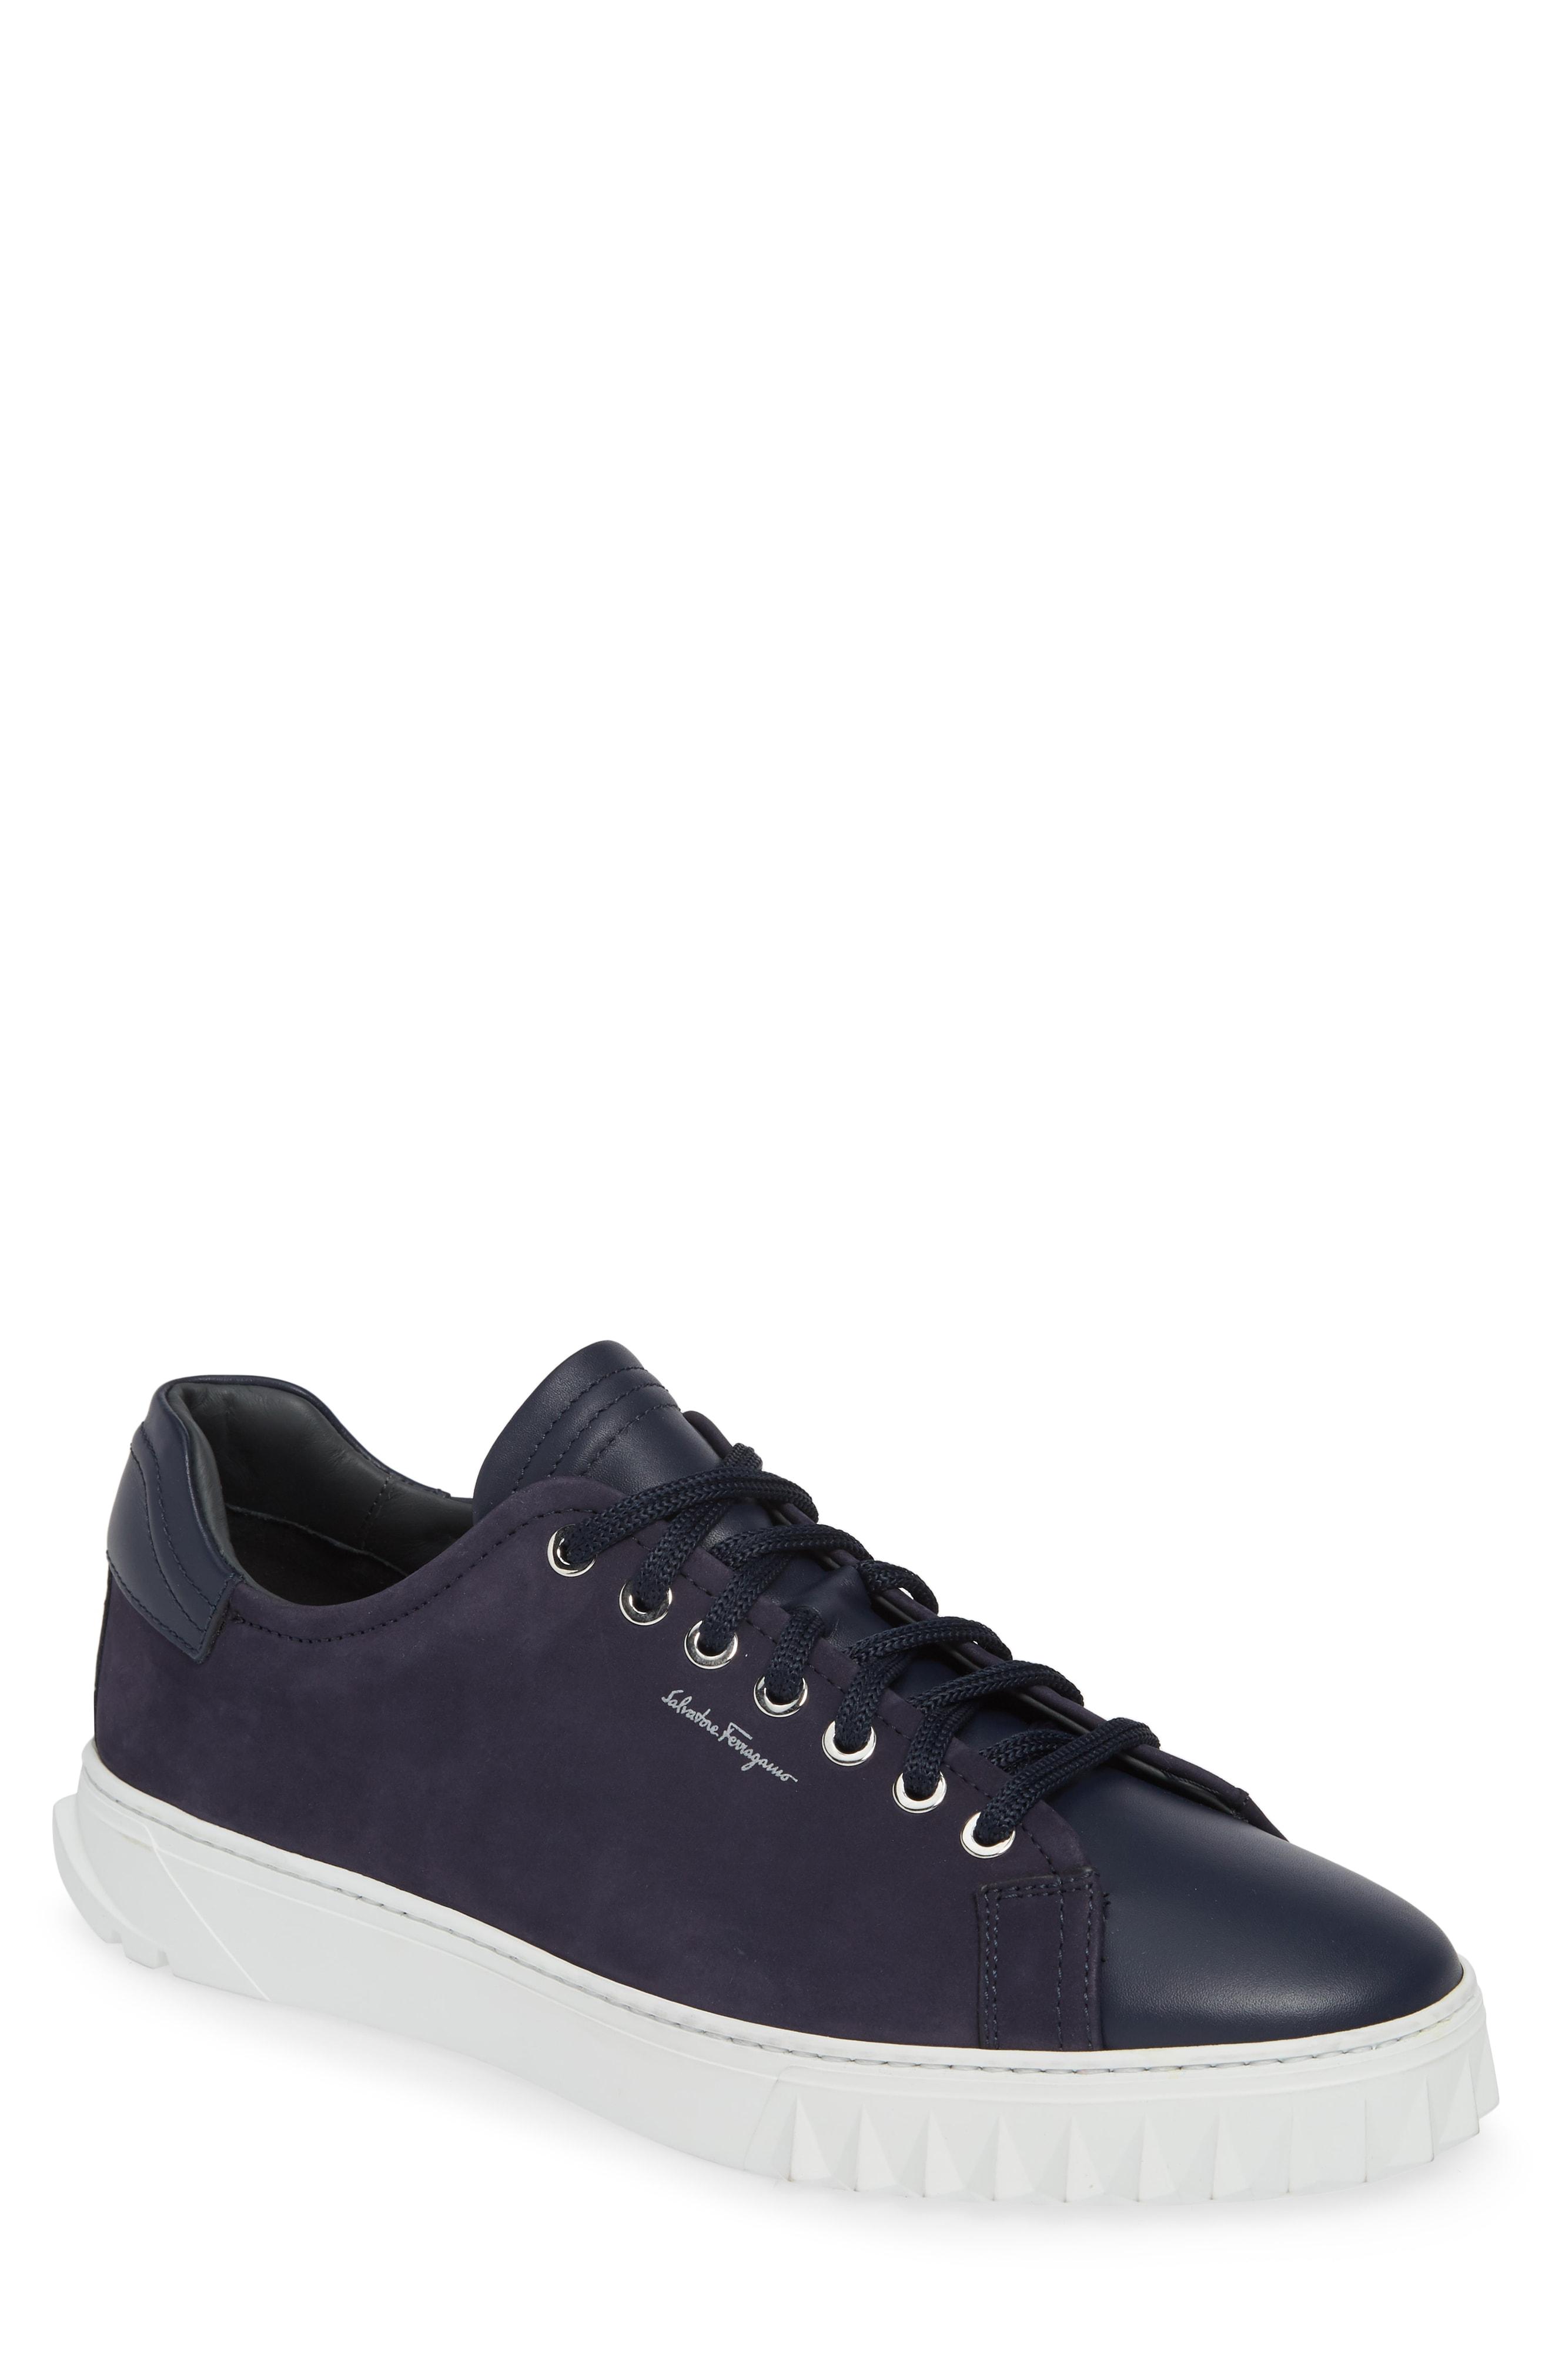 Ferragamo Leather Sneaker in Marine Blue (Blue) for Men - Lyst